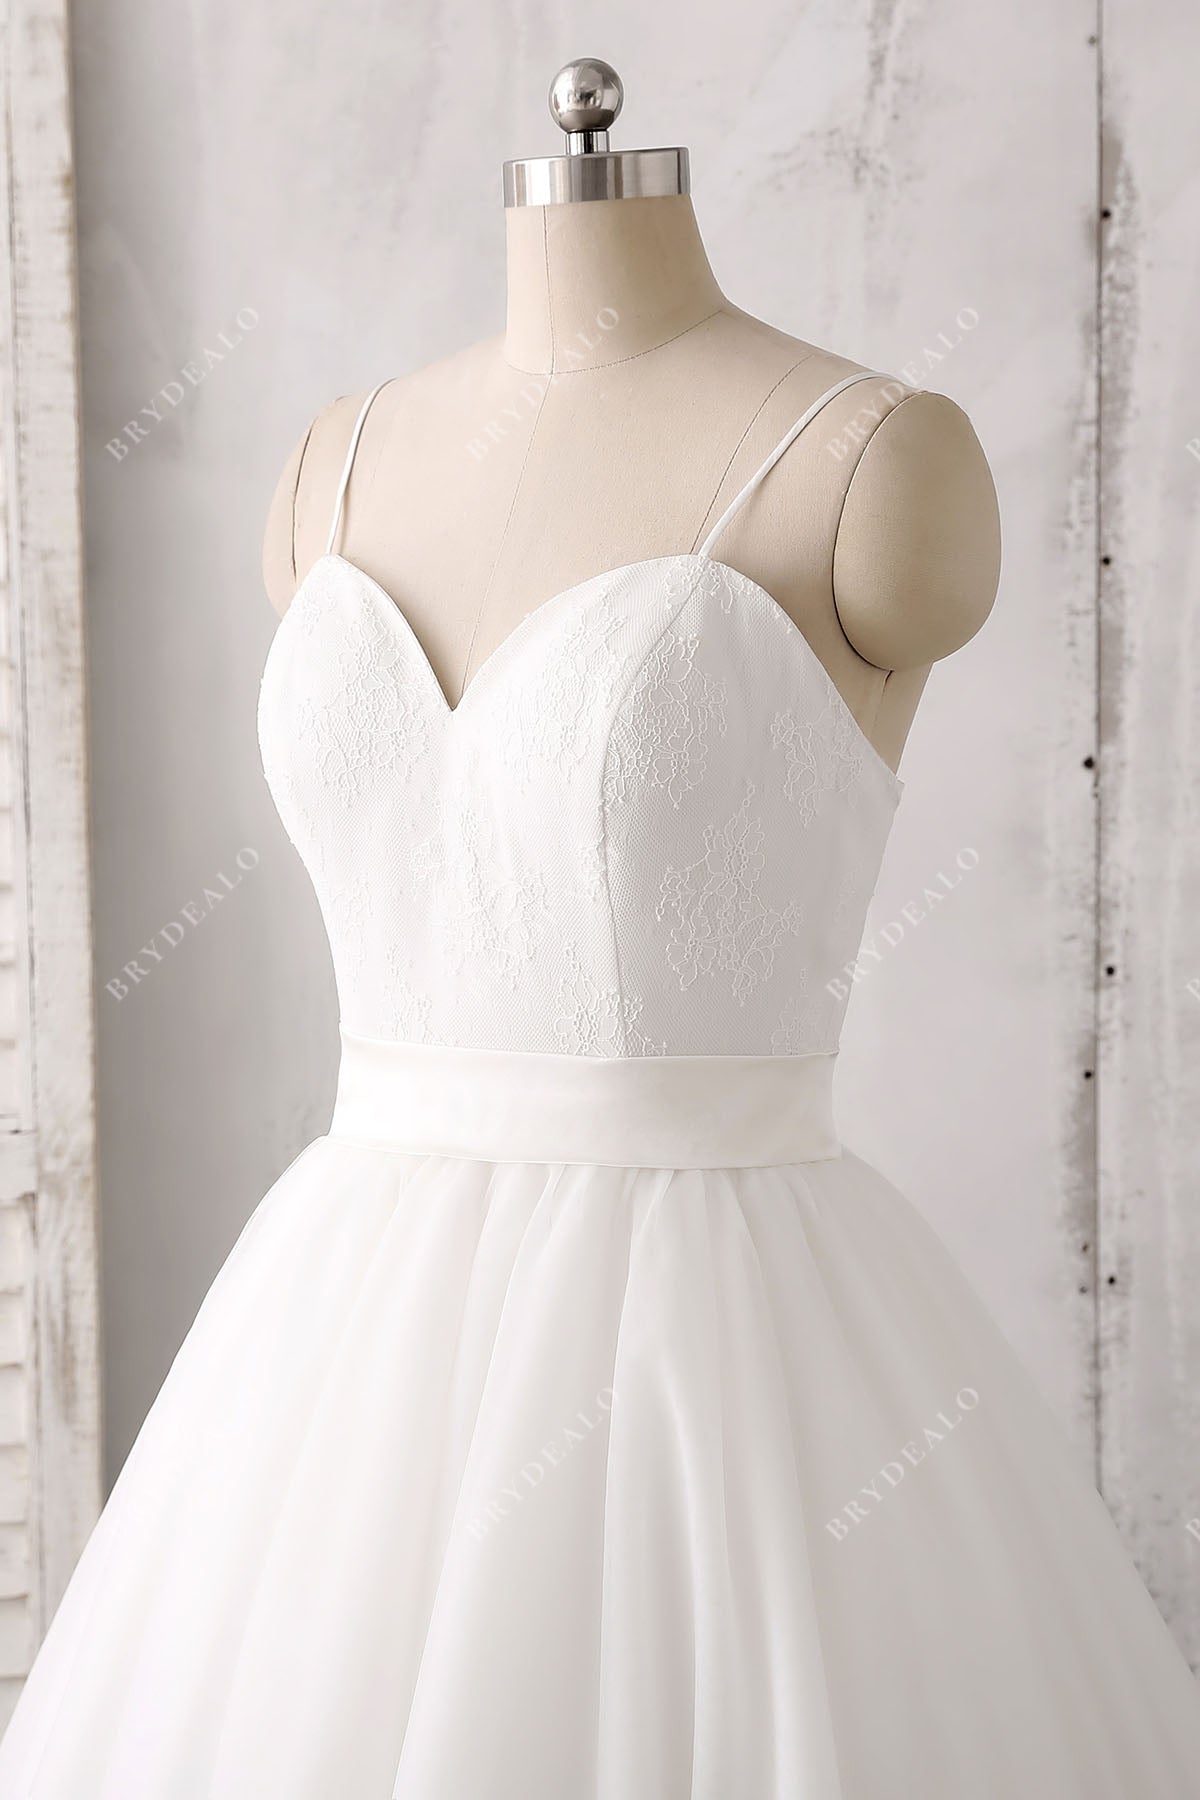 spaghetti straps sleeveless wedding gown